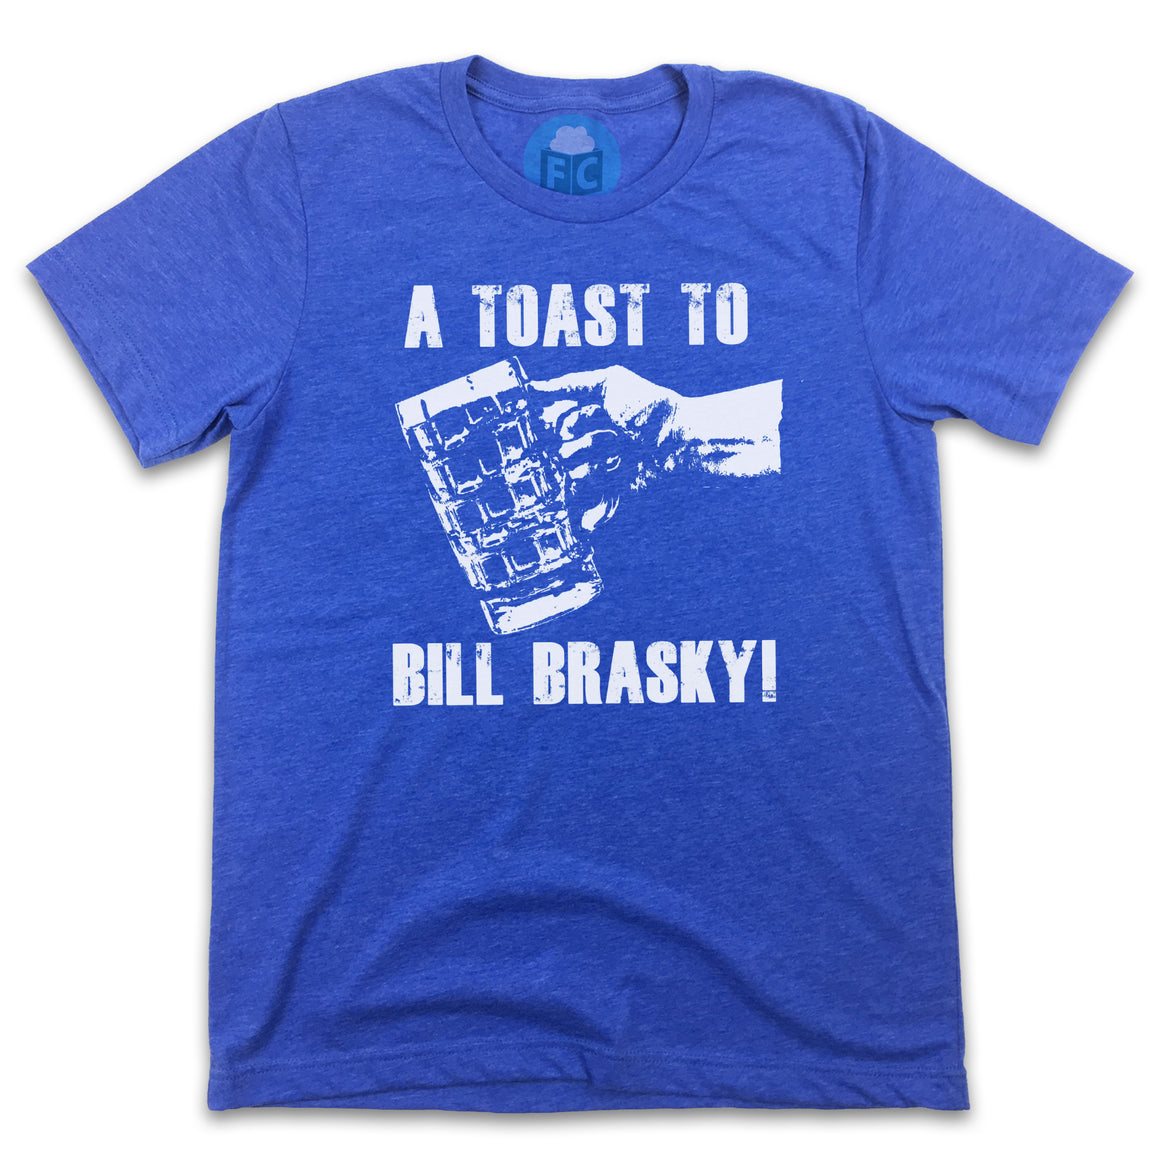 A Toast to Bill Brasky